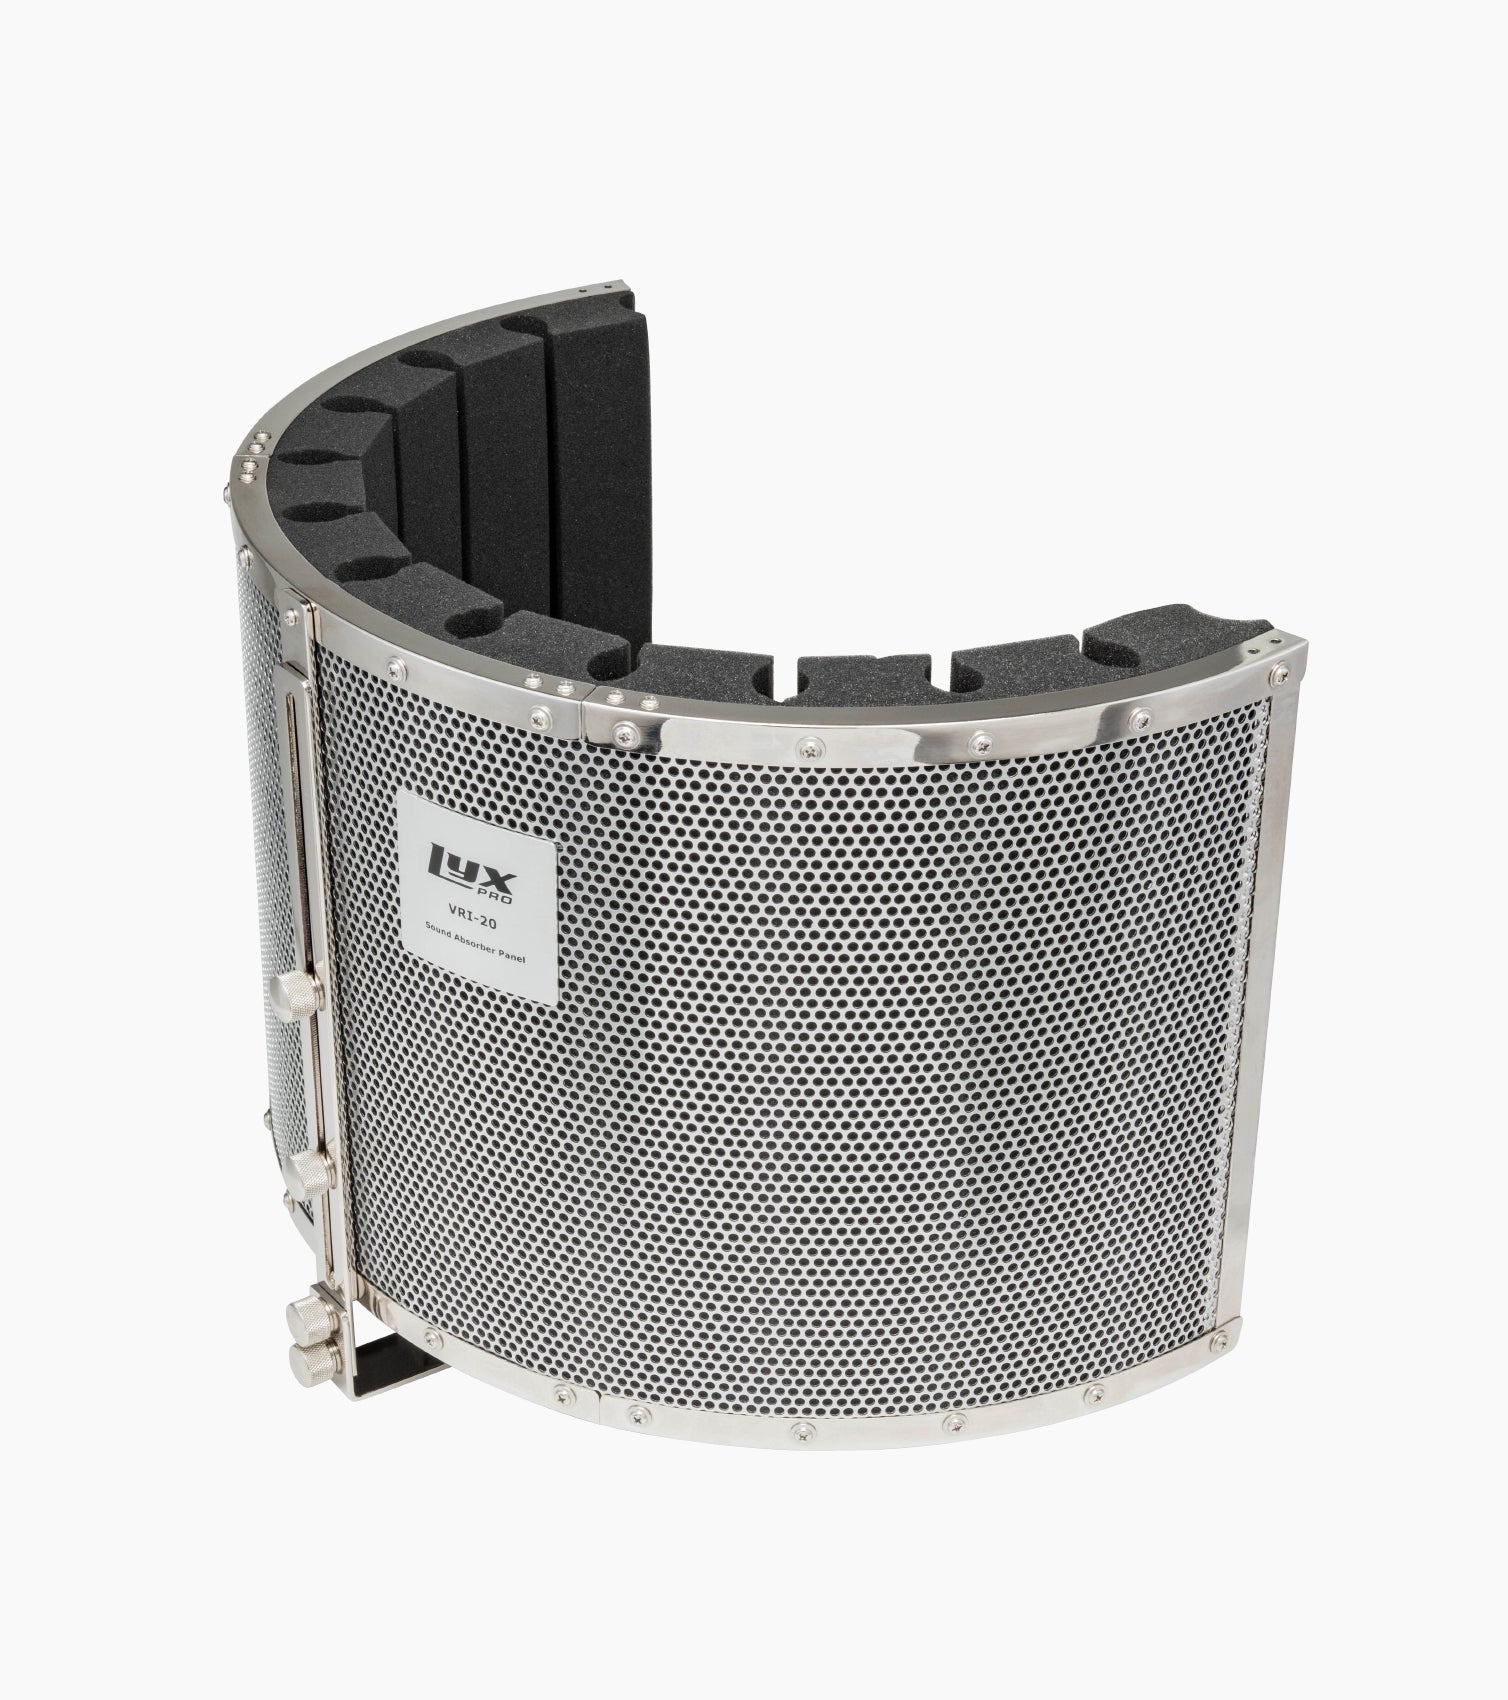  VRI-20 sound absorbing vocal shield exterior 